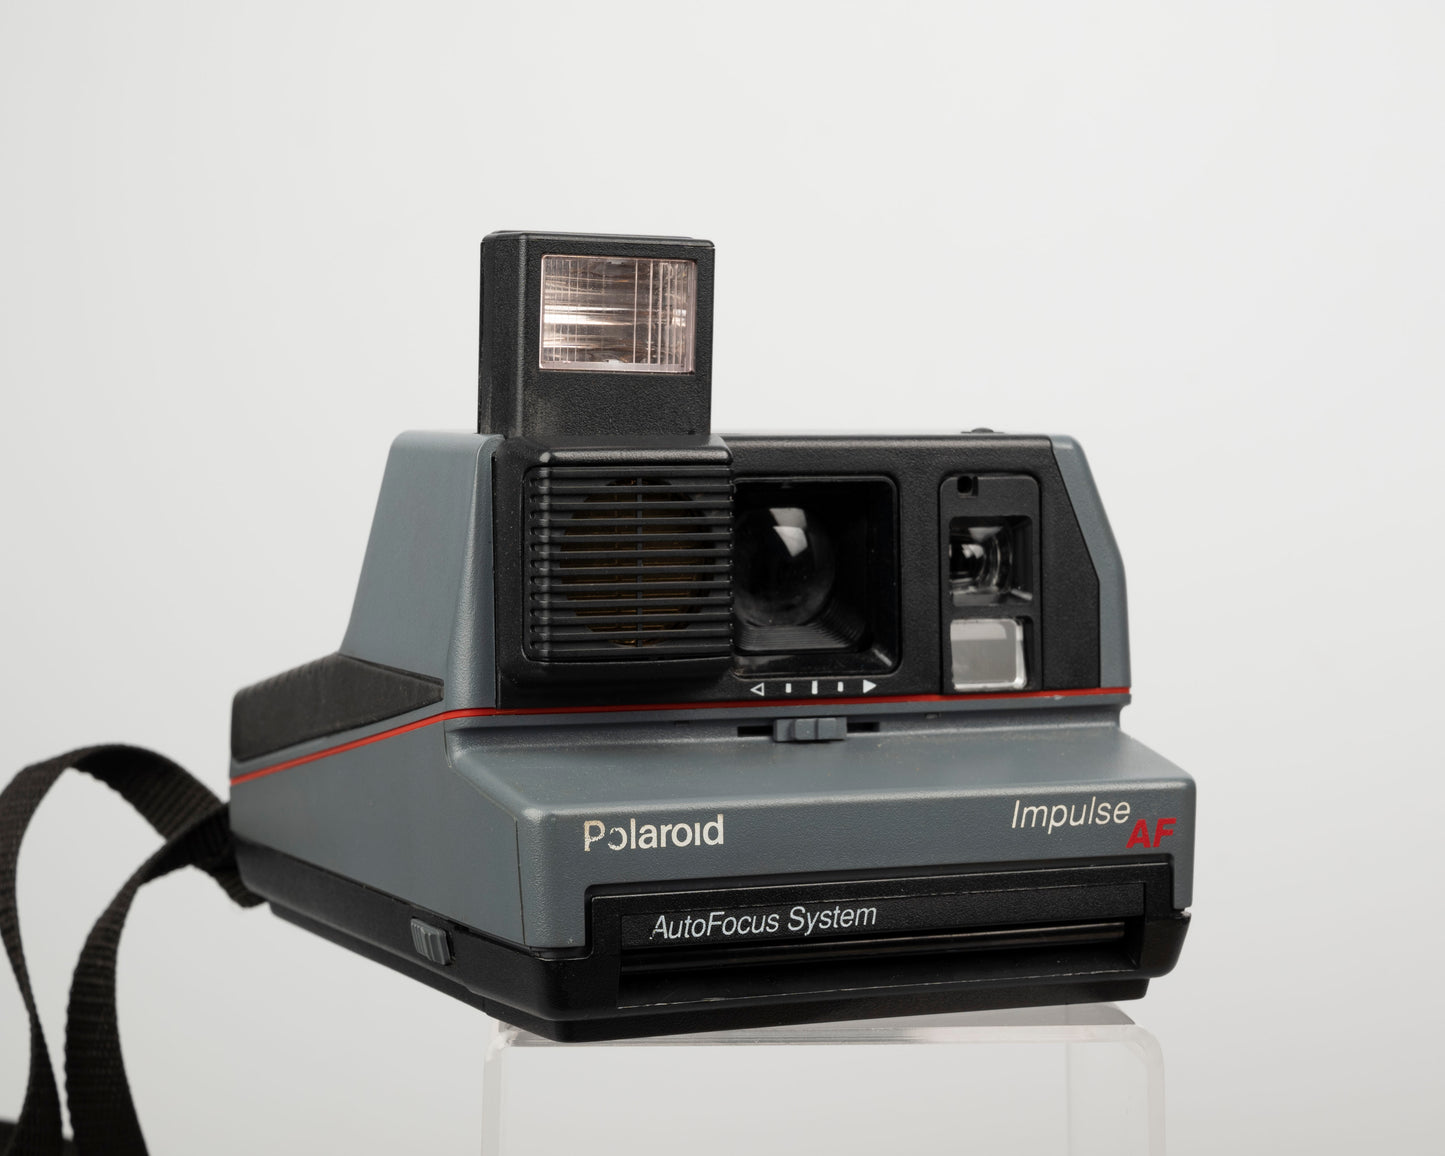 Appareil photo instantané Polaroid Impulse AF avec étui d'origine, filtre à prisme et manuel (série C4K18579YDCA)